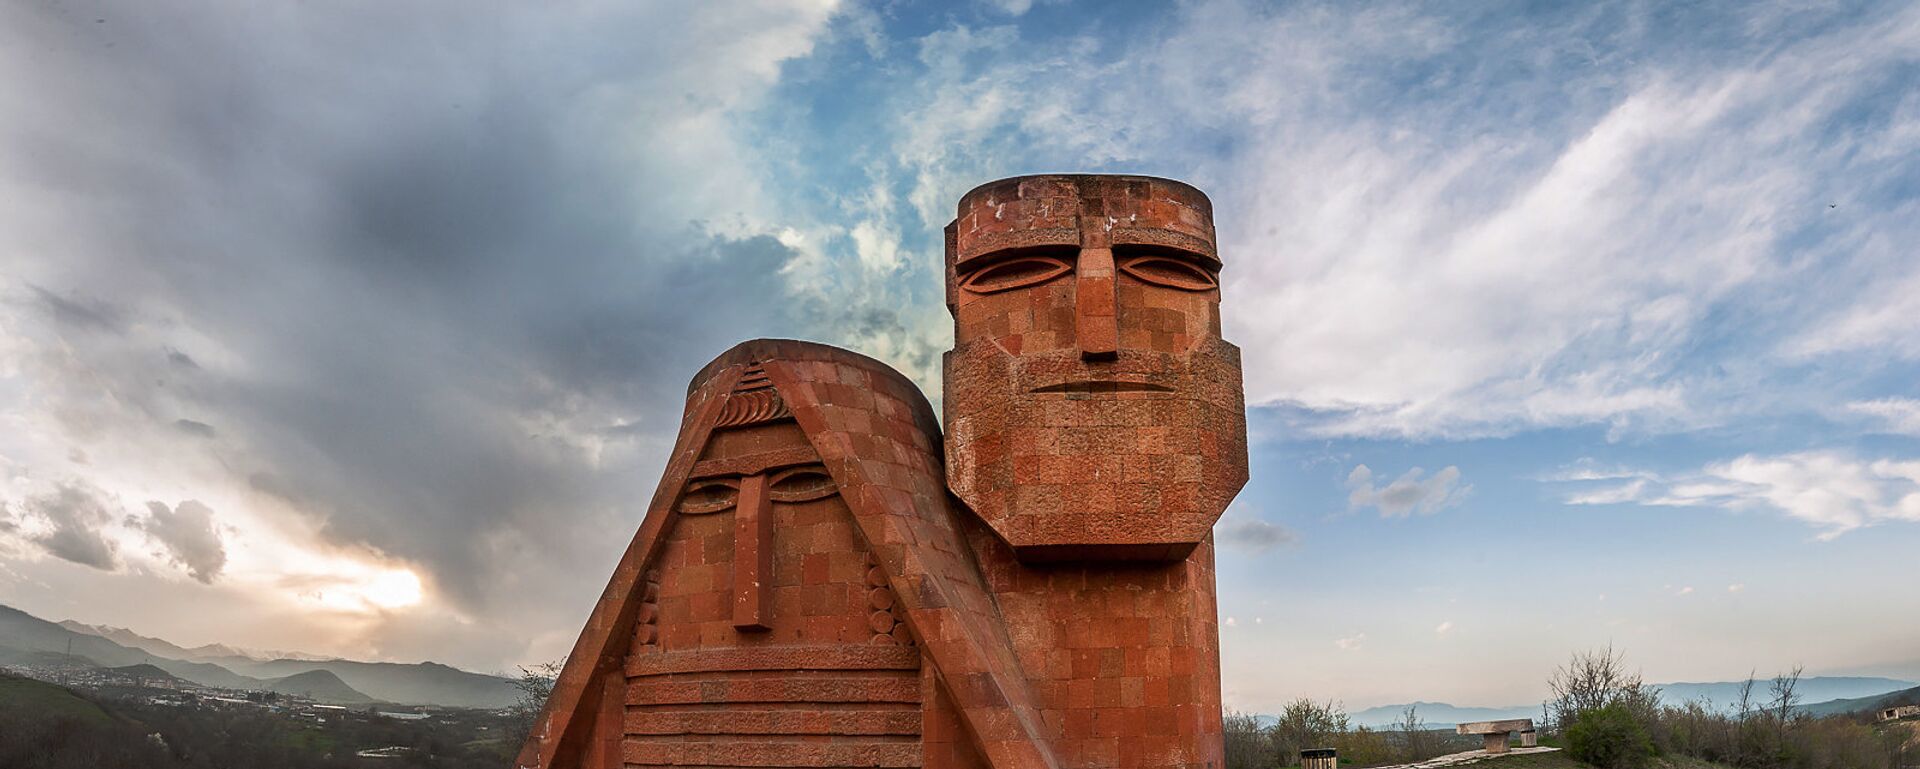 Памятник Мы-наши горы. Степанакерт. НКР - Sputnik Армения, 1920, 13.06.2020